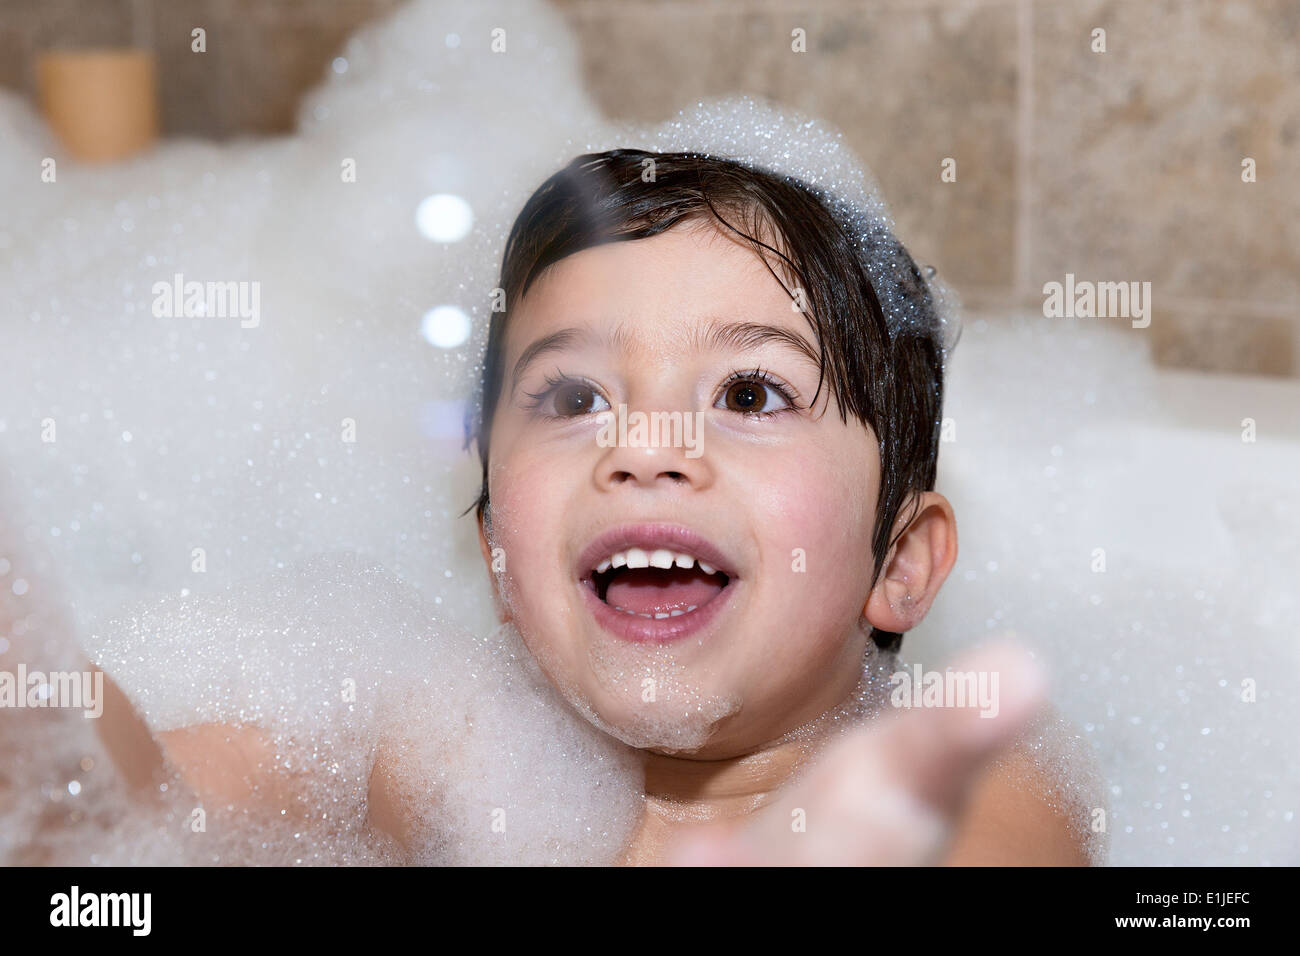 Jeune garçon essayant d'attraper bubble in bubble bath Banque D'Images